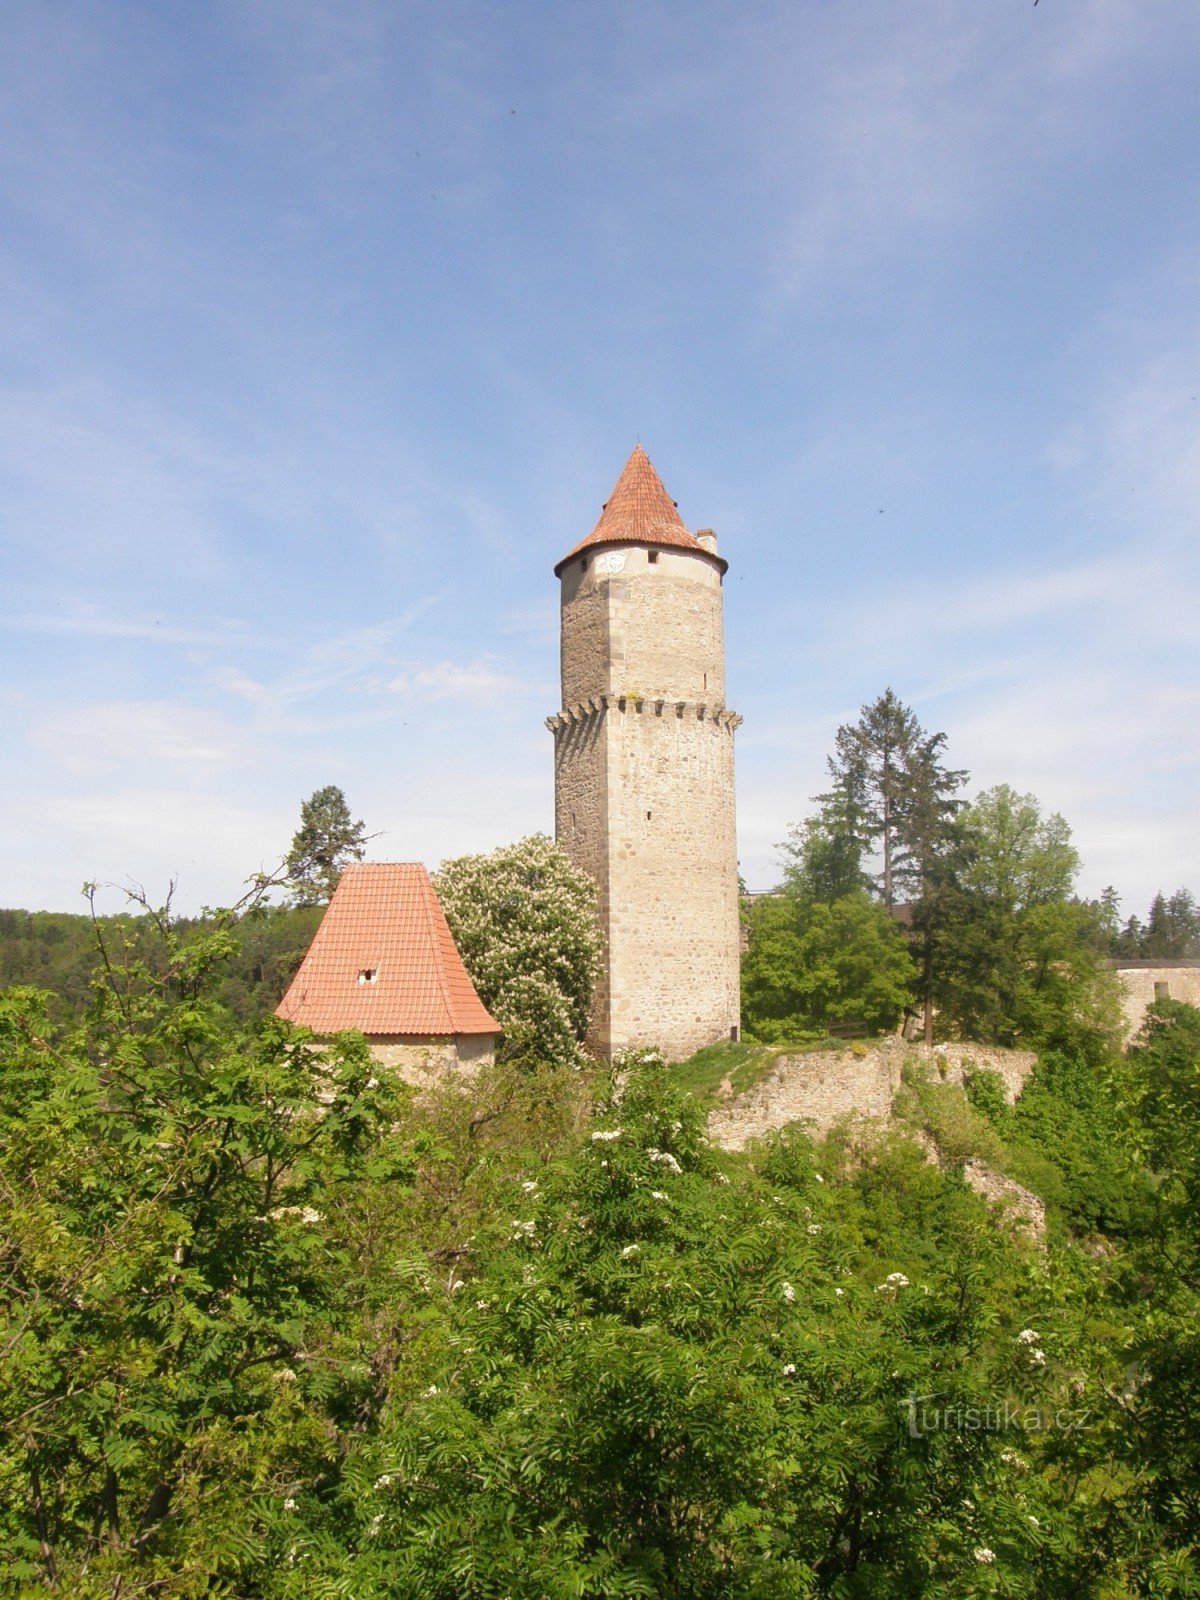 Cổng Písecká và Tháp Hláska không thể tách rời nhau